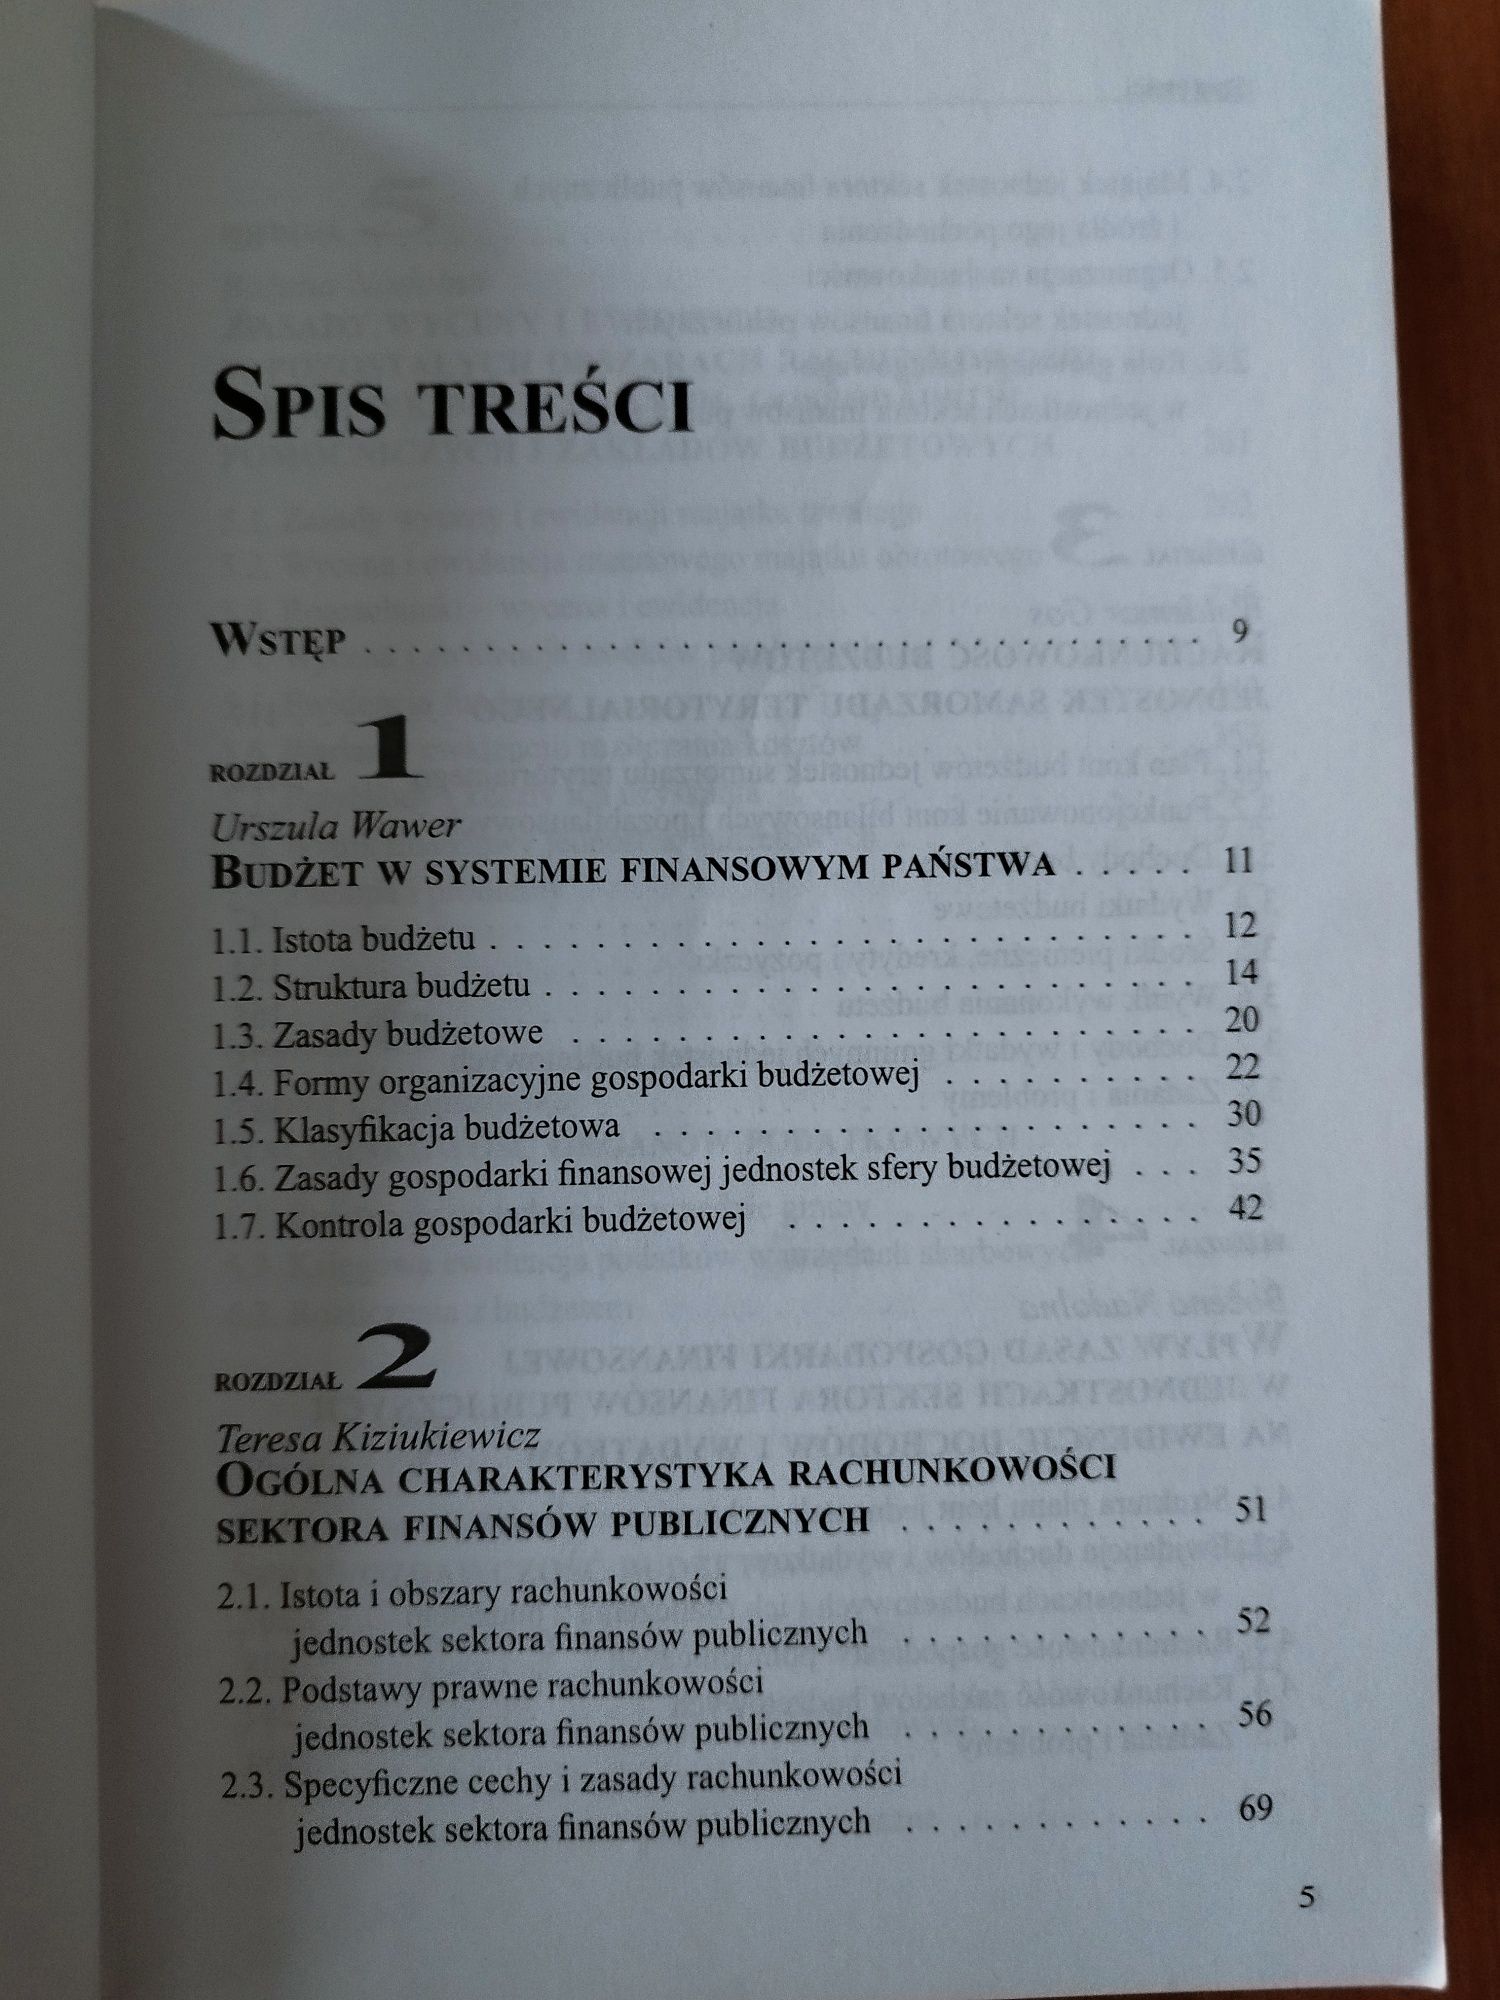 Rachunkowość w jedn. sektora finansów publ. - T. Kiziukiewicz